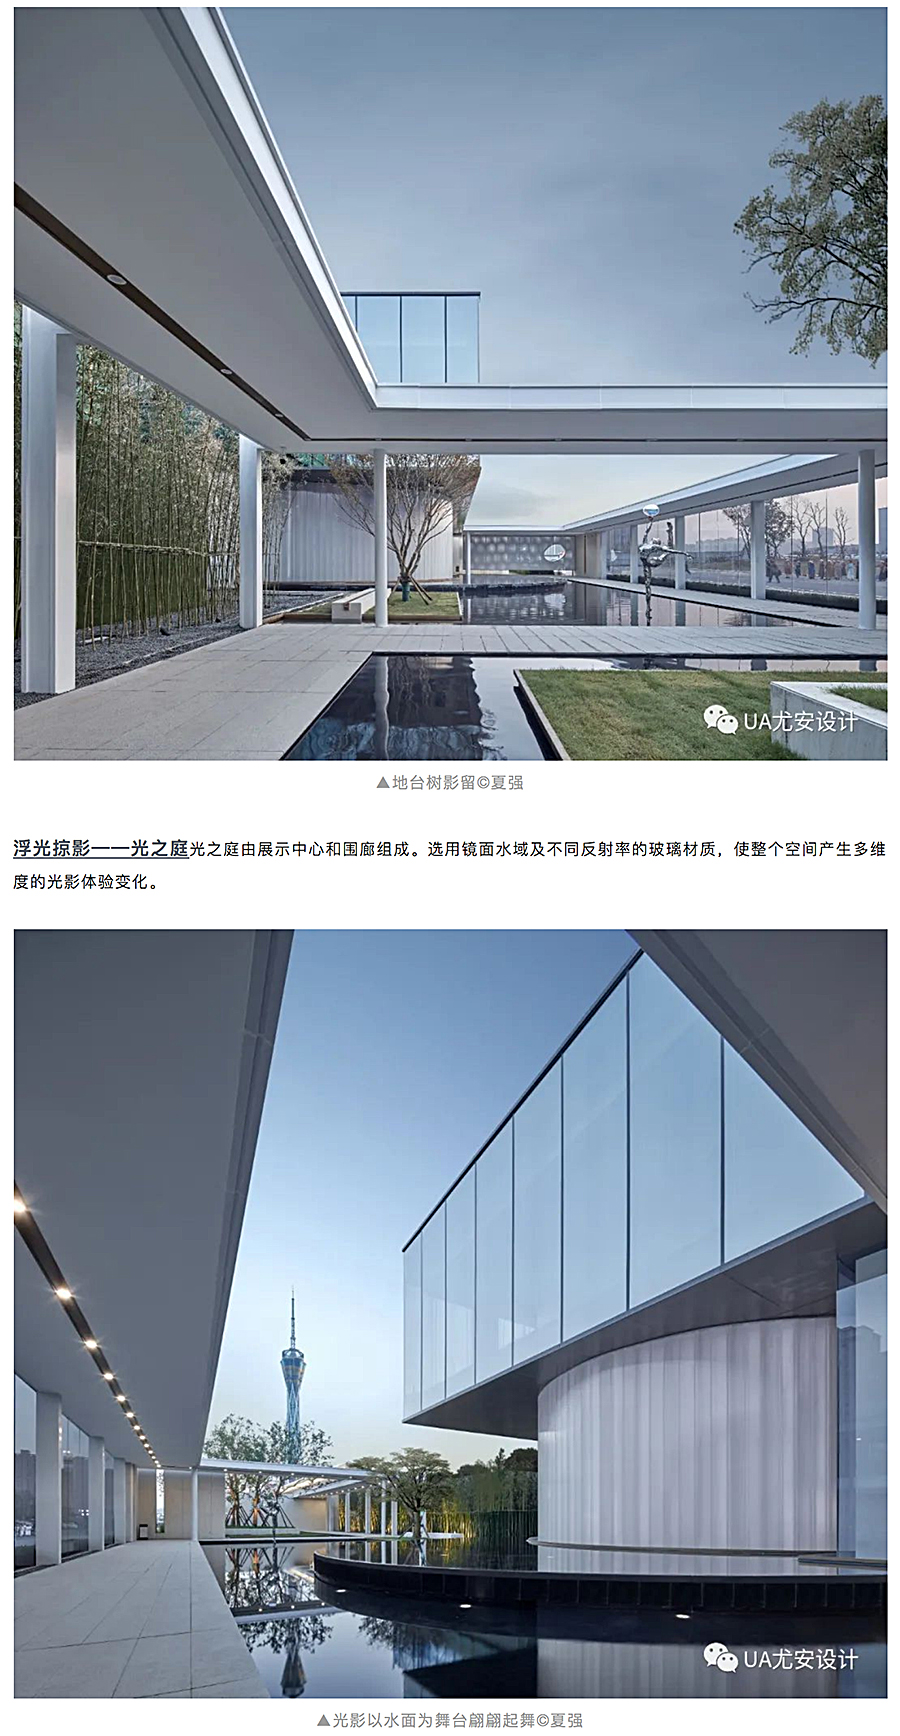 空间的艺术性塑造-_-郑州保利天汇展示中心_0005_图层-6.jpg